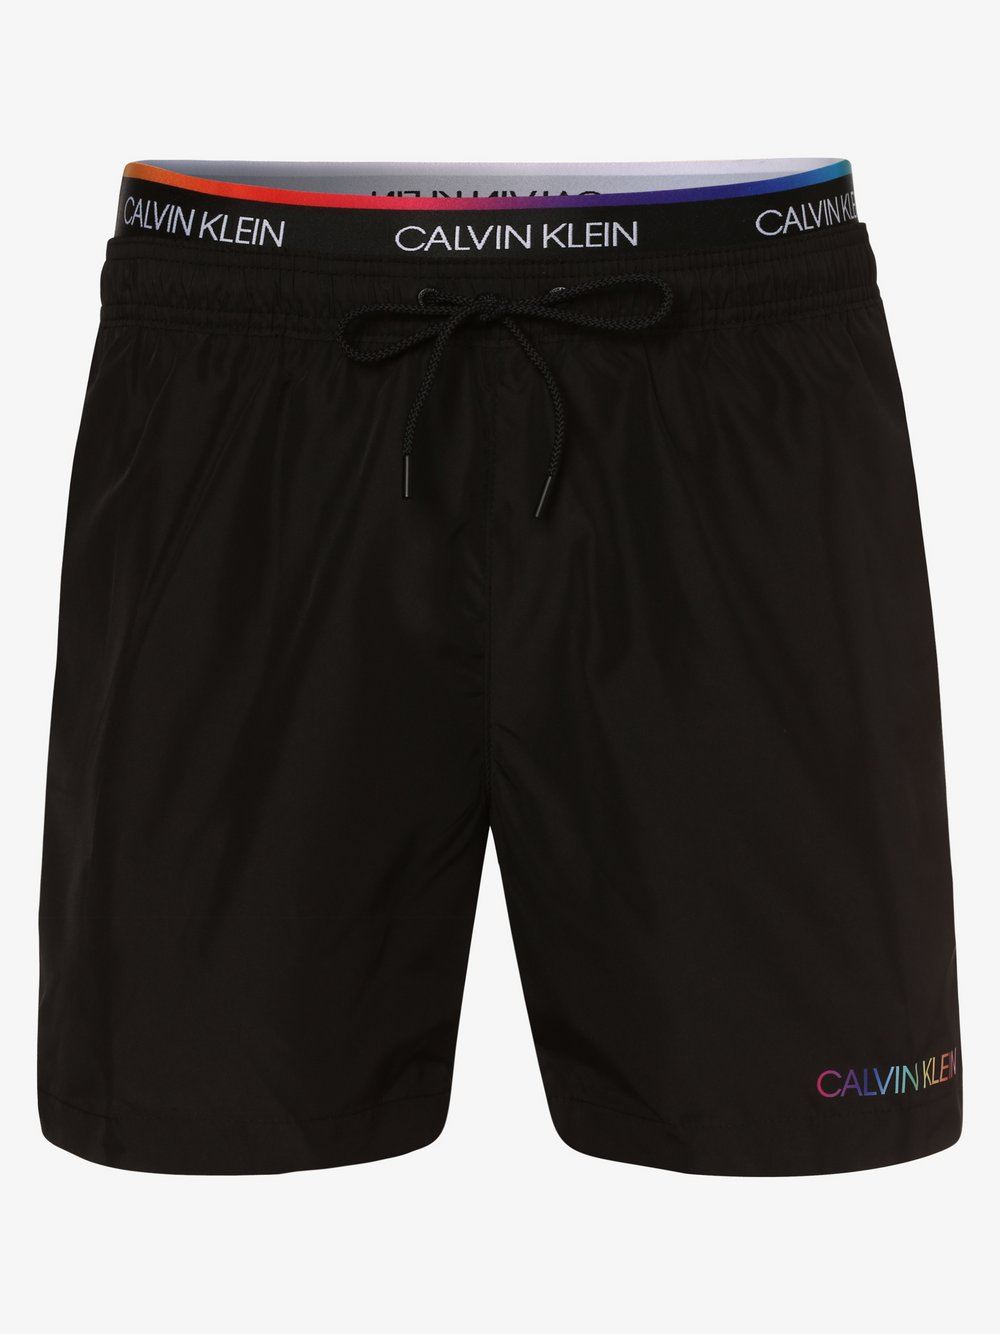 Calvin Klein - Męskie spodenki kąpielowe, czarny